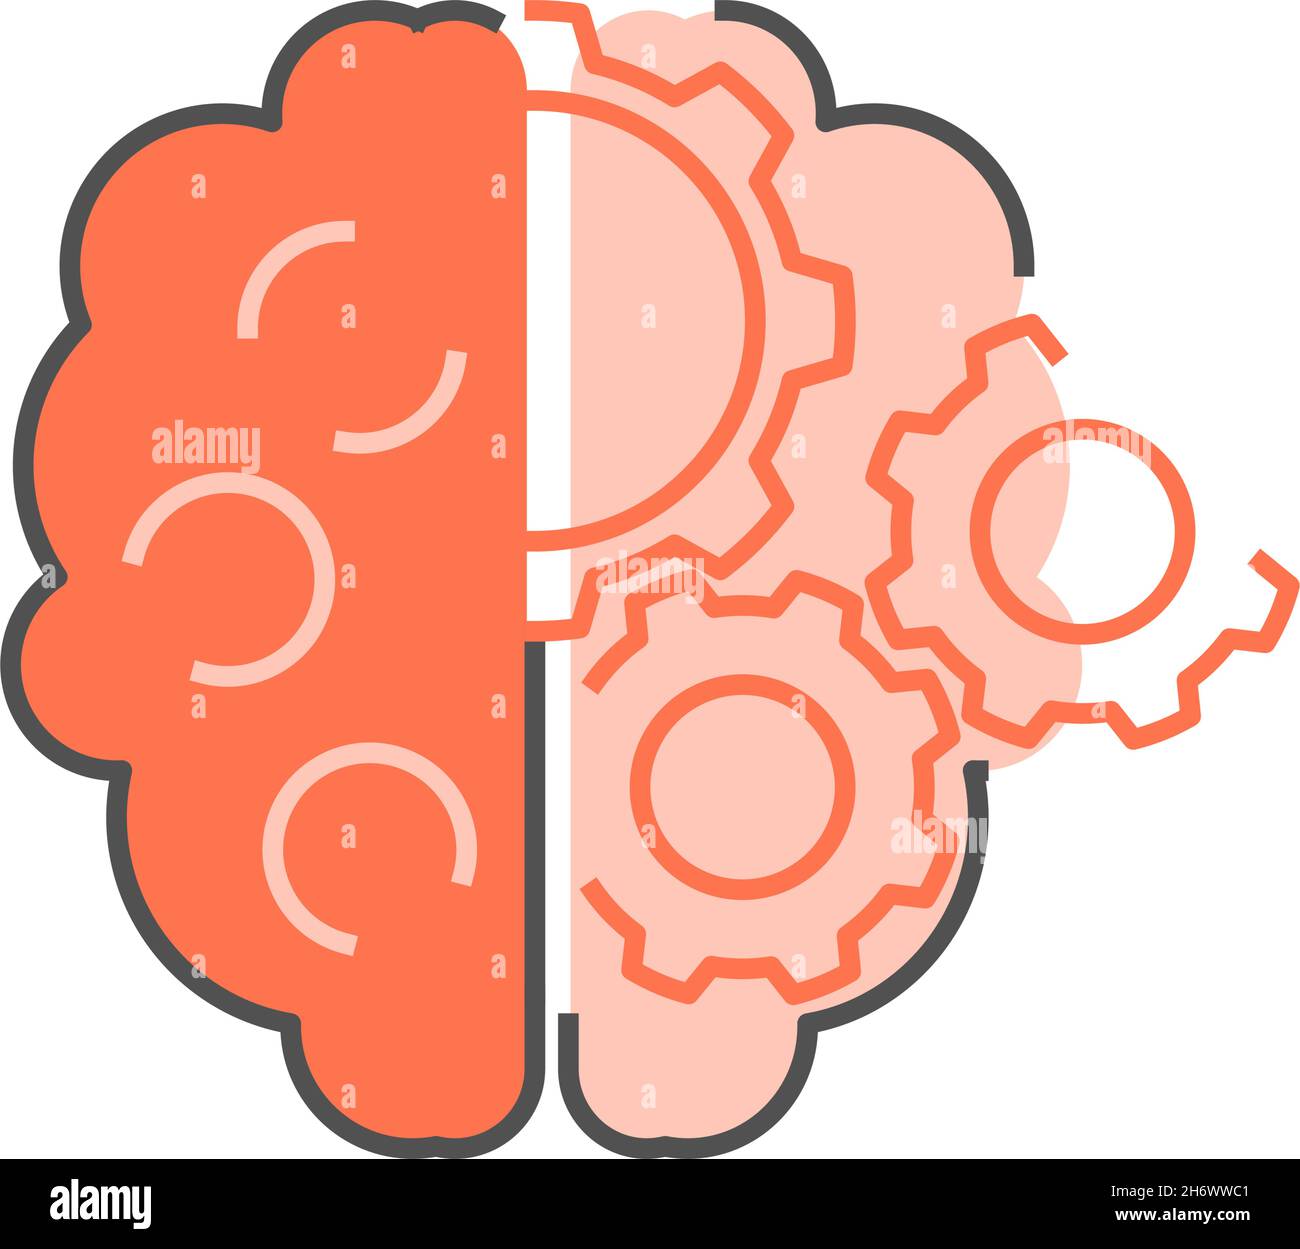 Menschliches Gehirn mit Zahnrädern. Kreative Ideengenerierung und Konzept für Hirnmechanismen. Flache Illustration. Isoliert auf weißem Hintergrund. Stock Vektor